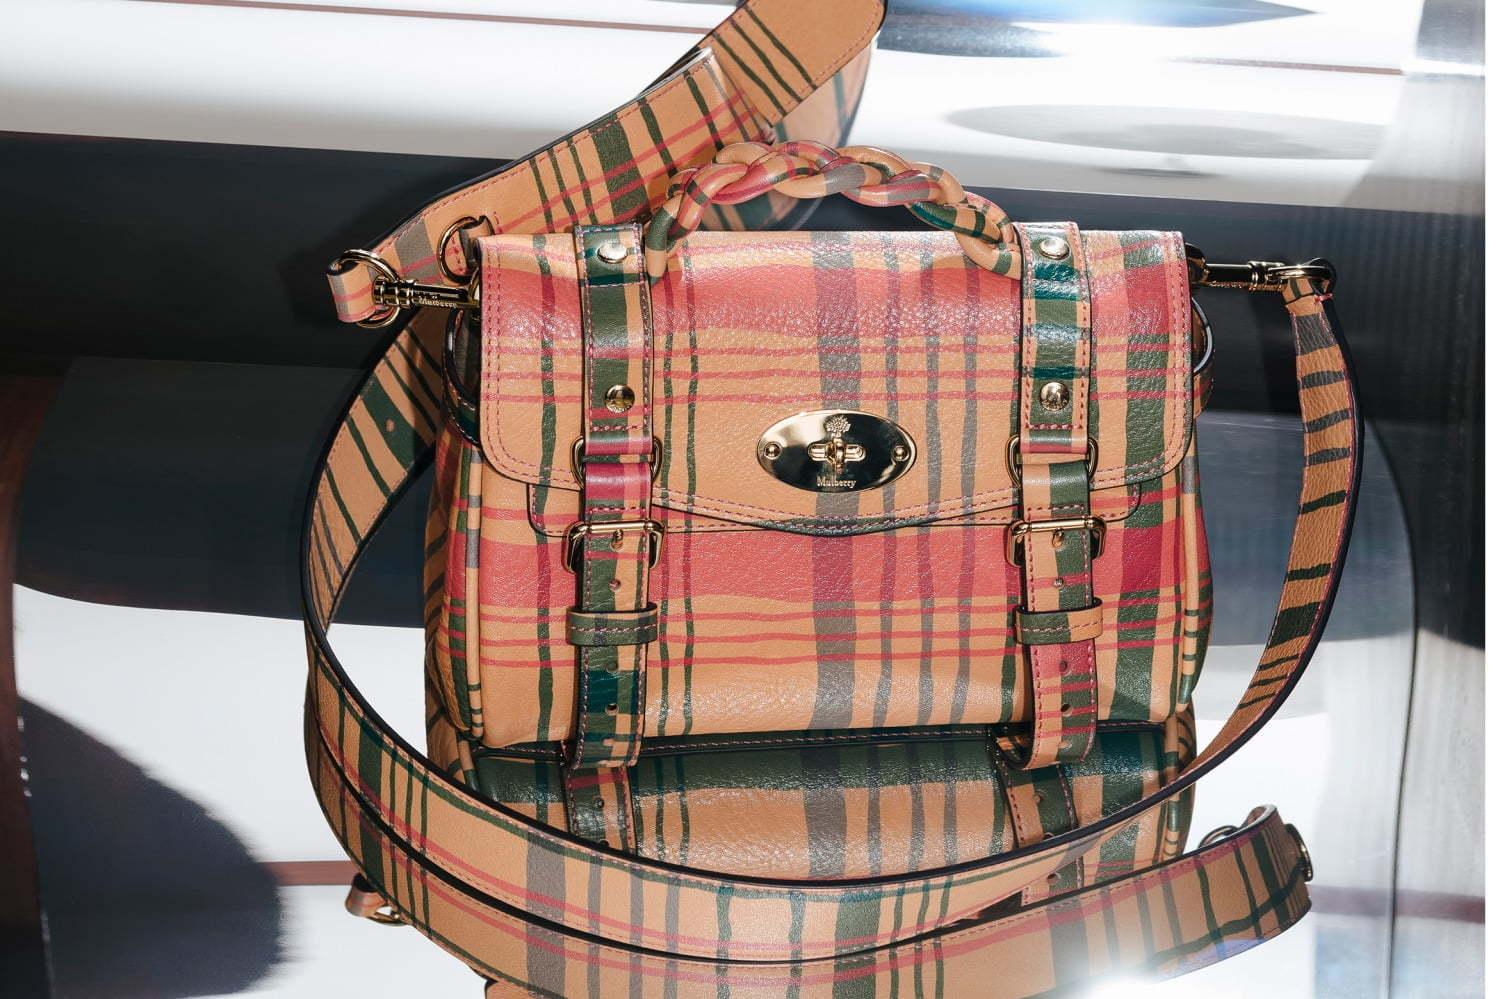 マルベリー名作バッグが“ミニサイズ”で復刻、旅行鞄イメージの「ロクサンヌ」&人気「アレクサ」など 